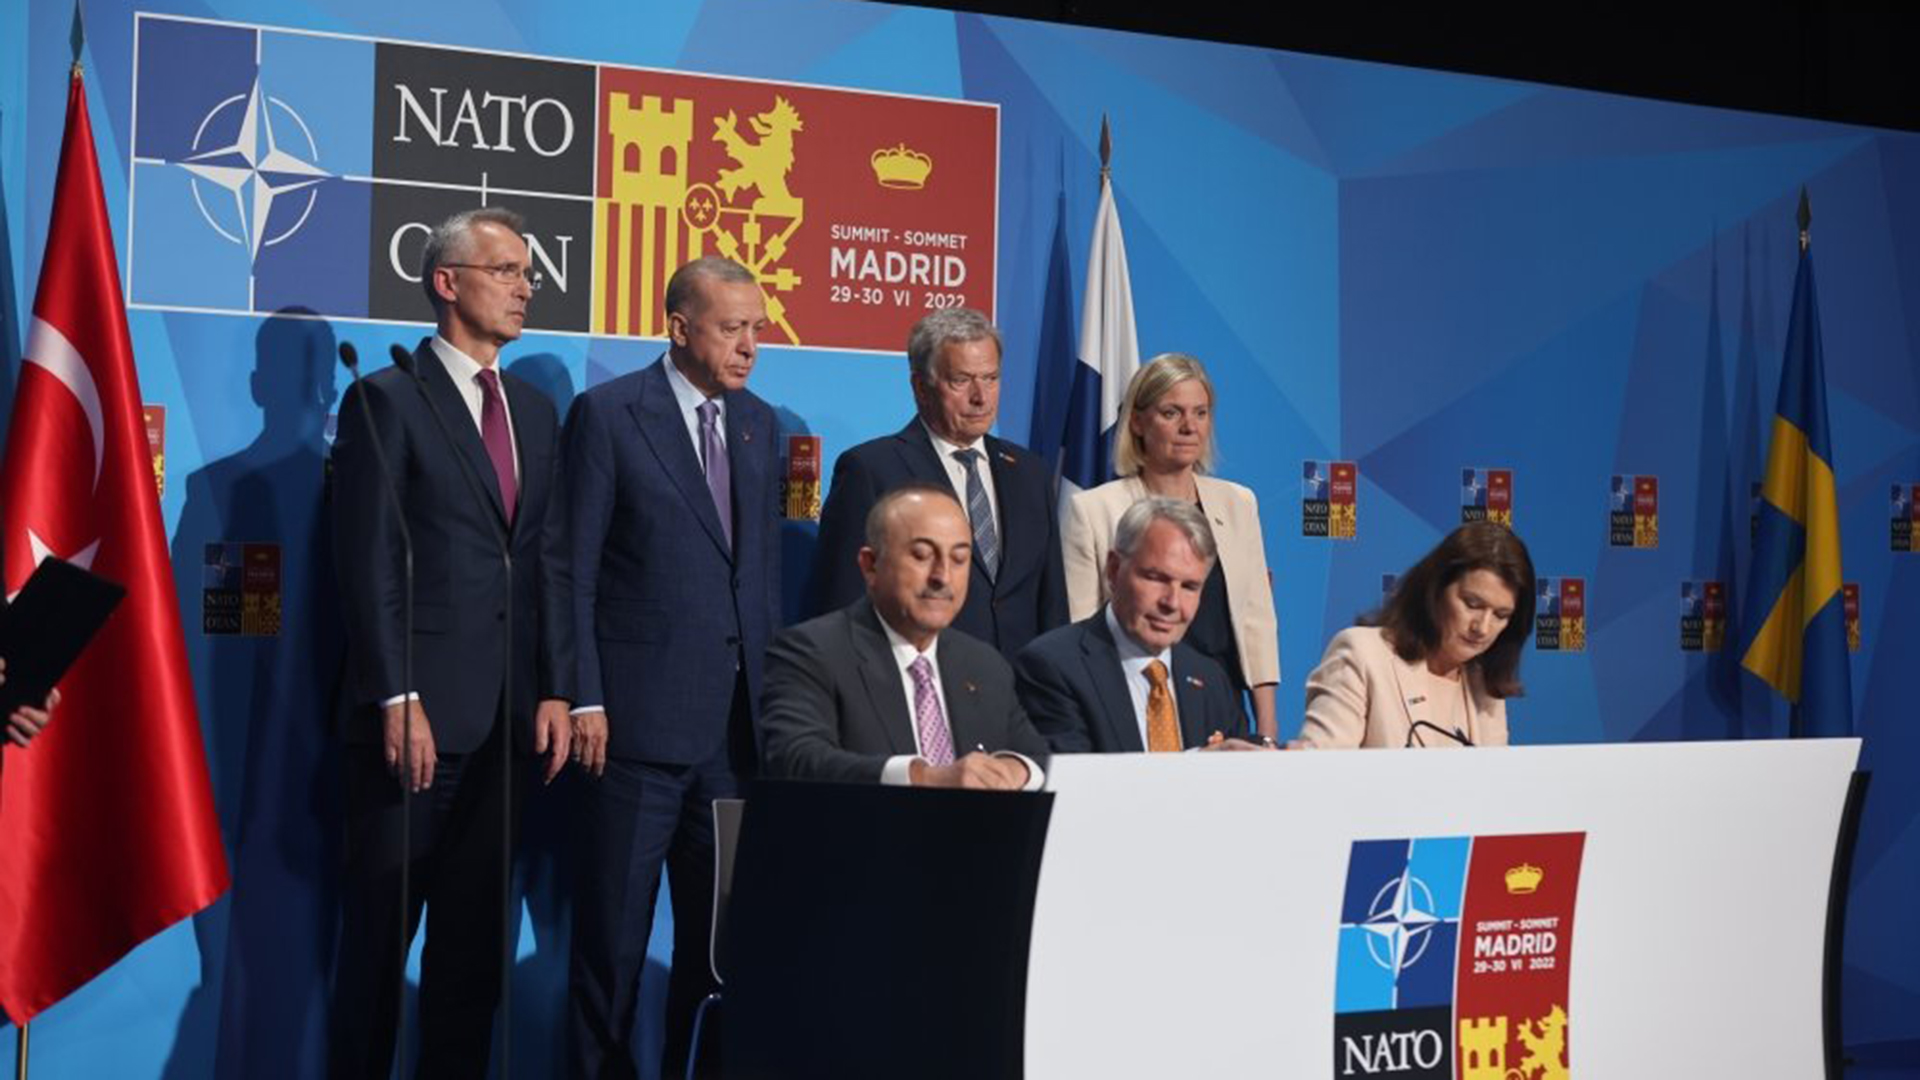 Los aliados firmarán hoy el protocolo de adhesión a la OTAN de Suecia y Finlandia